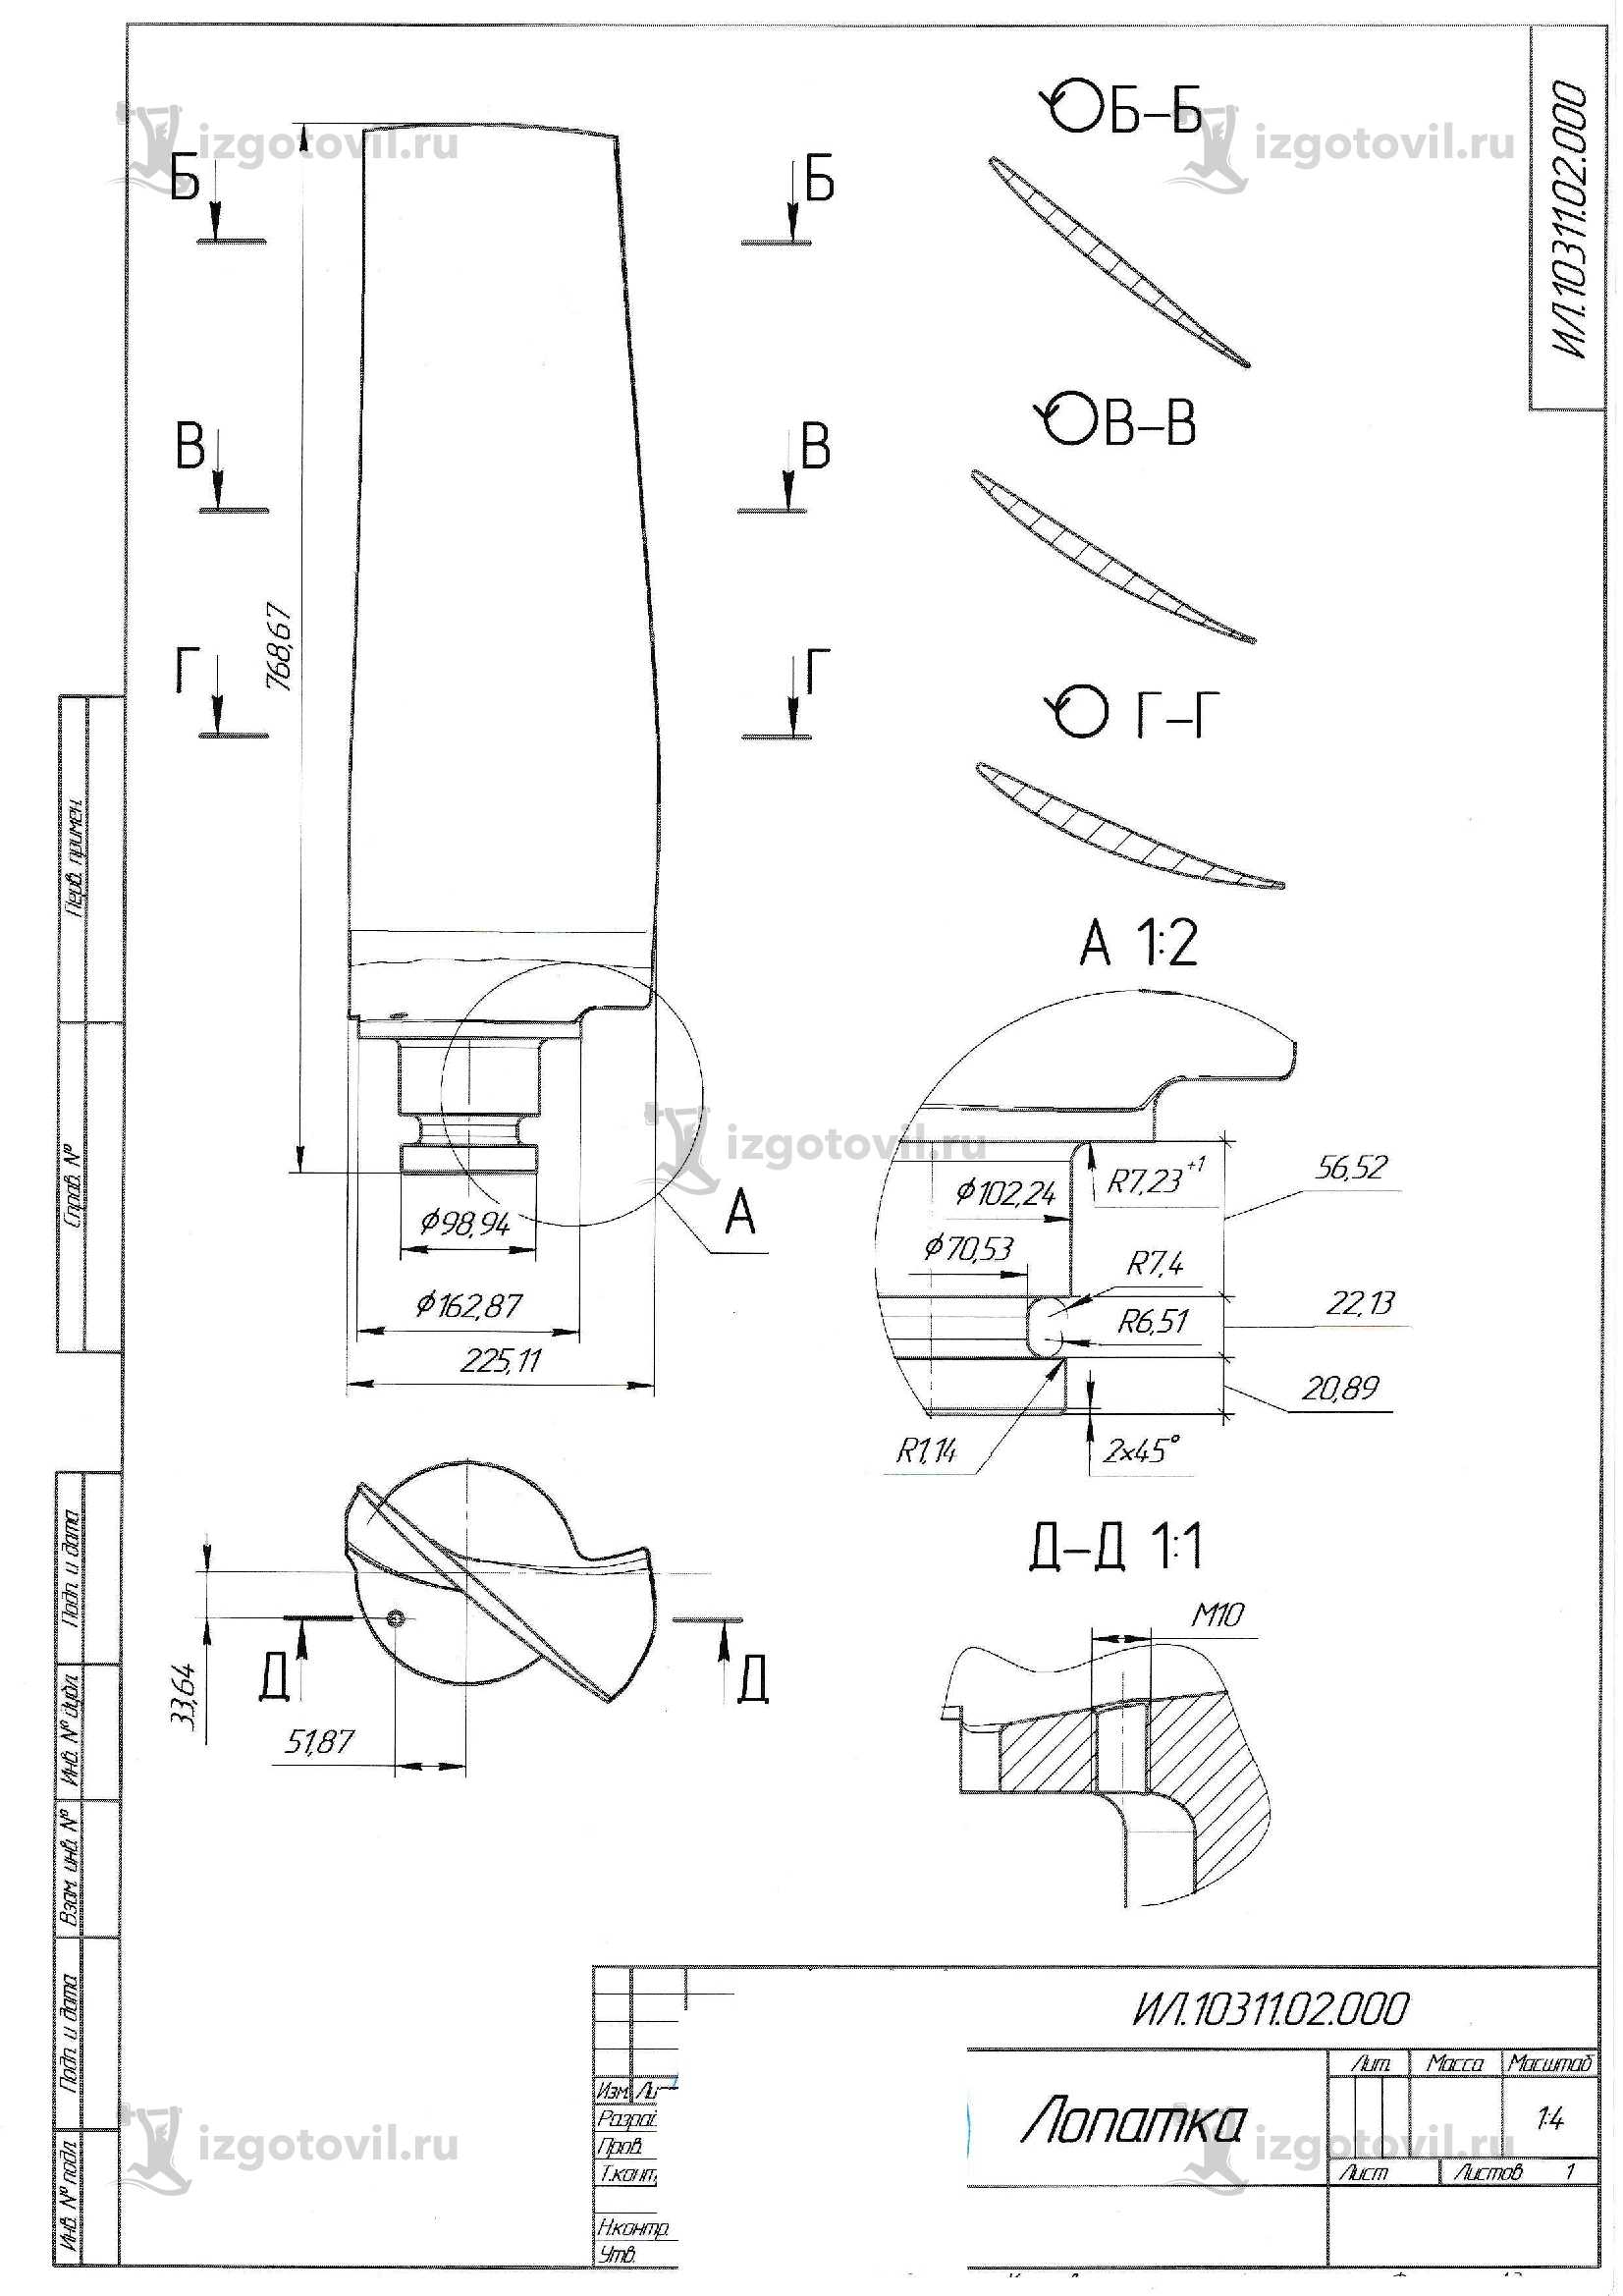 Изготовление деталей на заказ (лопатки вентилятора из алюминия под давлением)